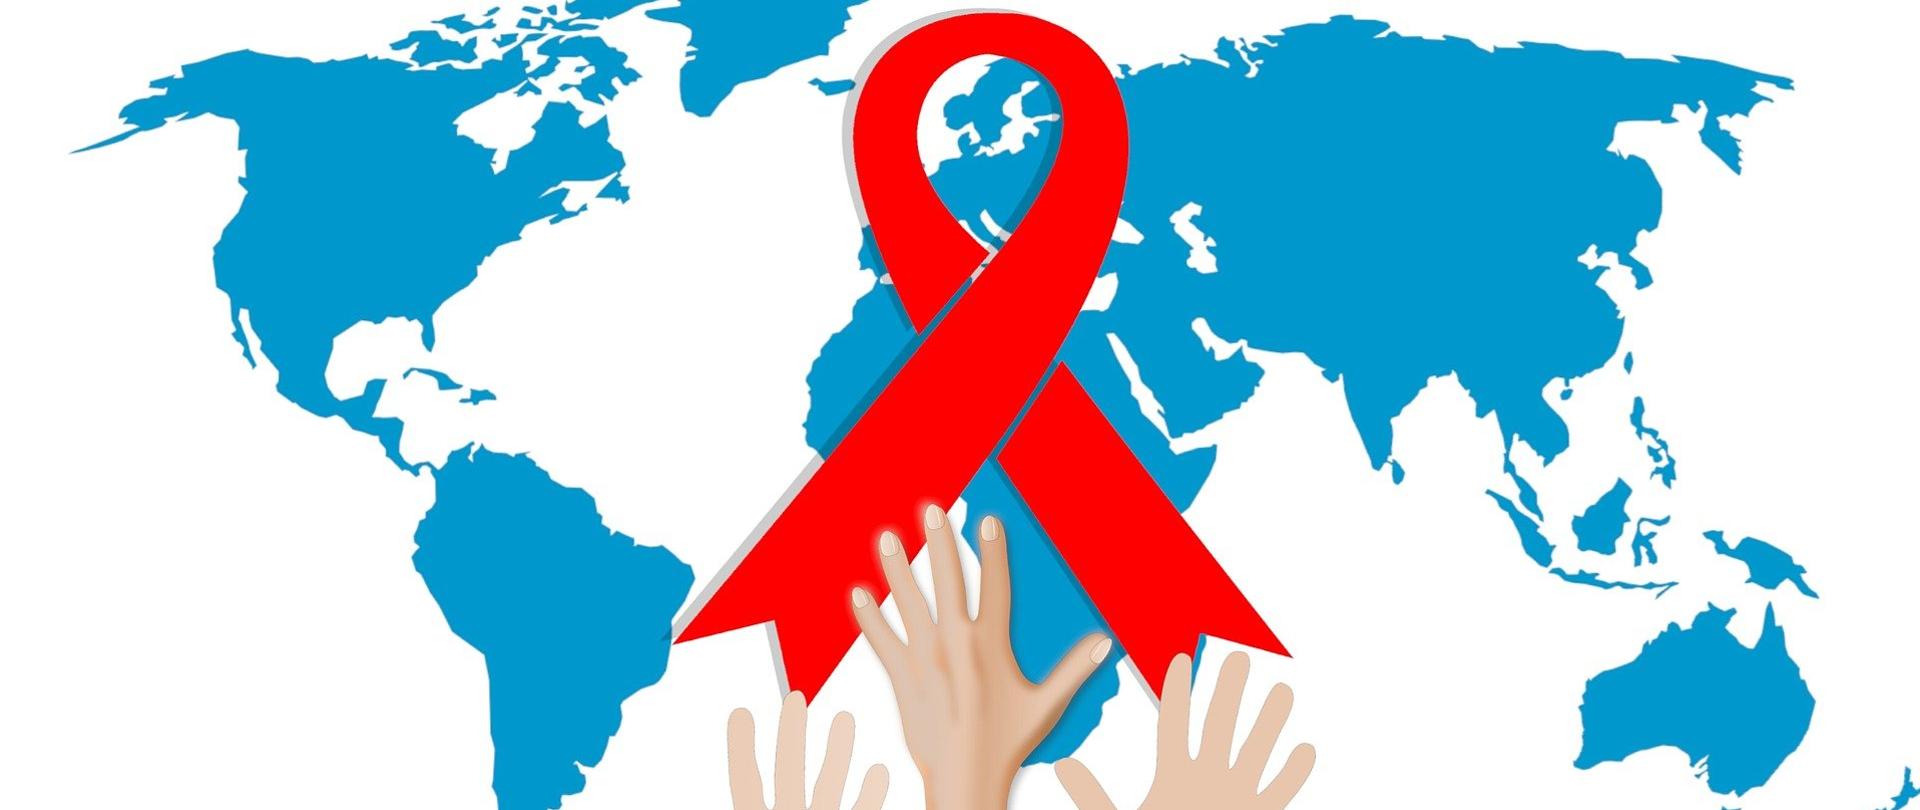 Grafika przedstawiająca mapę świata z czerwoną kokardką symbolizującą solidarność z osobami zakażonymi wirusem HIV